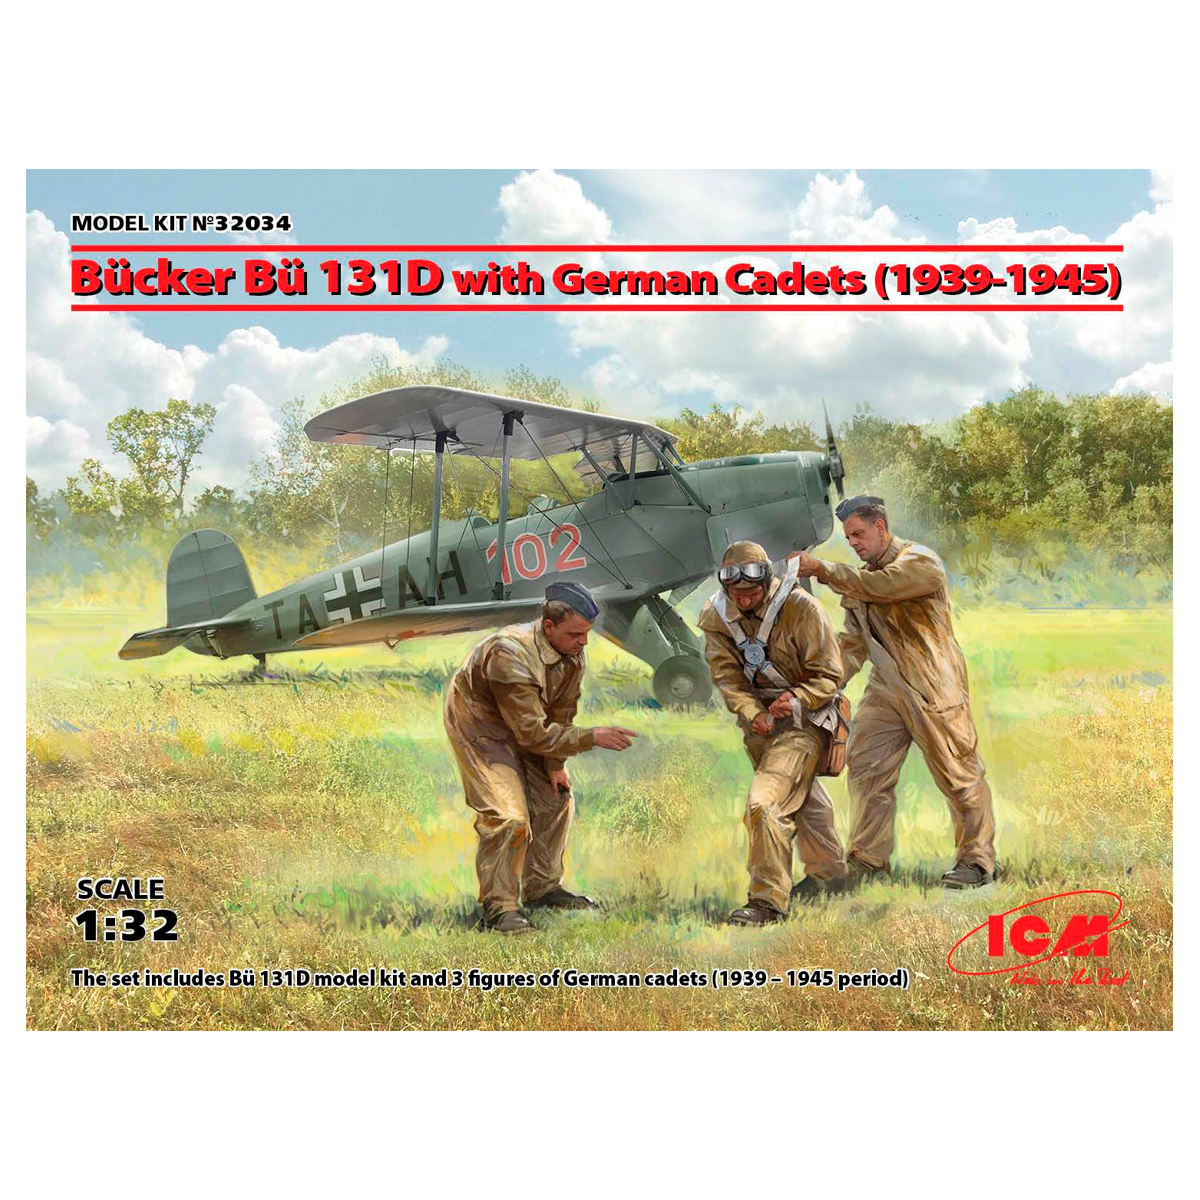 Bücker Bü 131D with German Cadets (1939-1945) 1/32